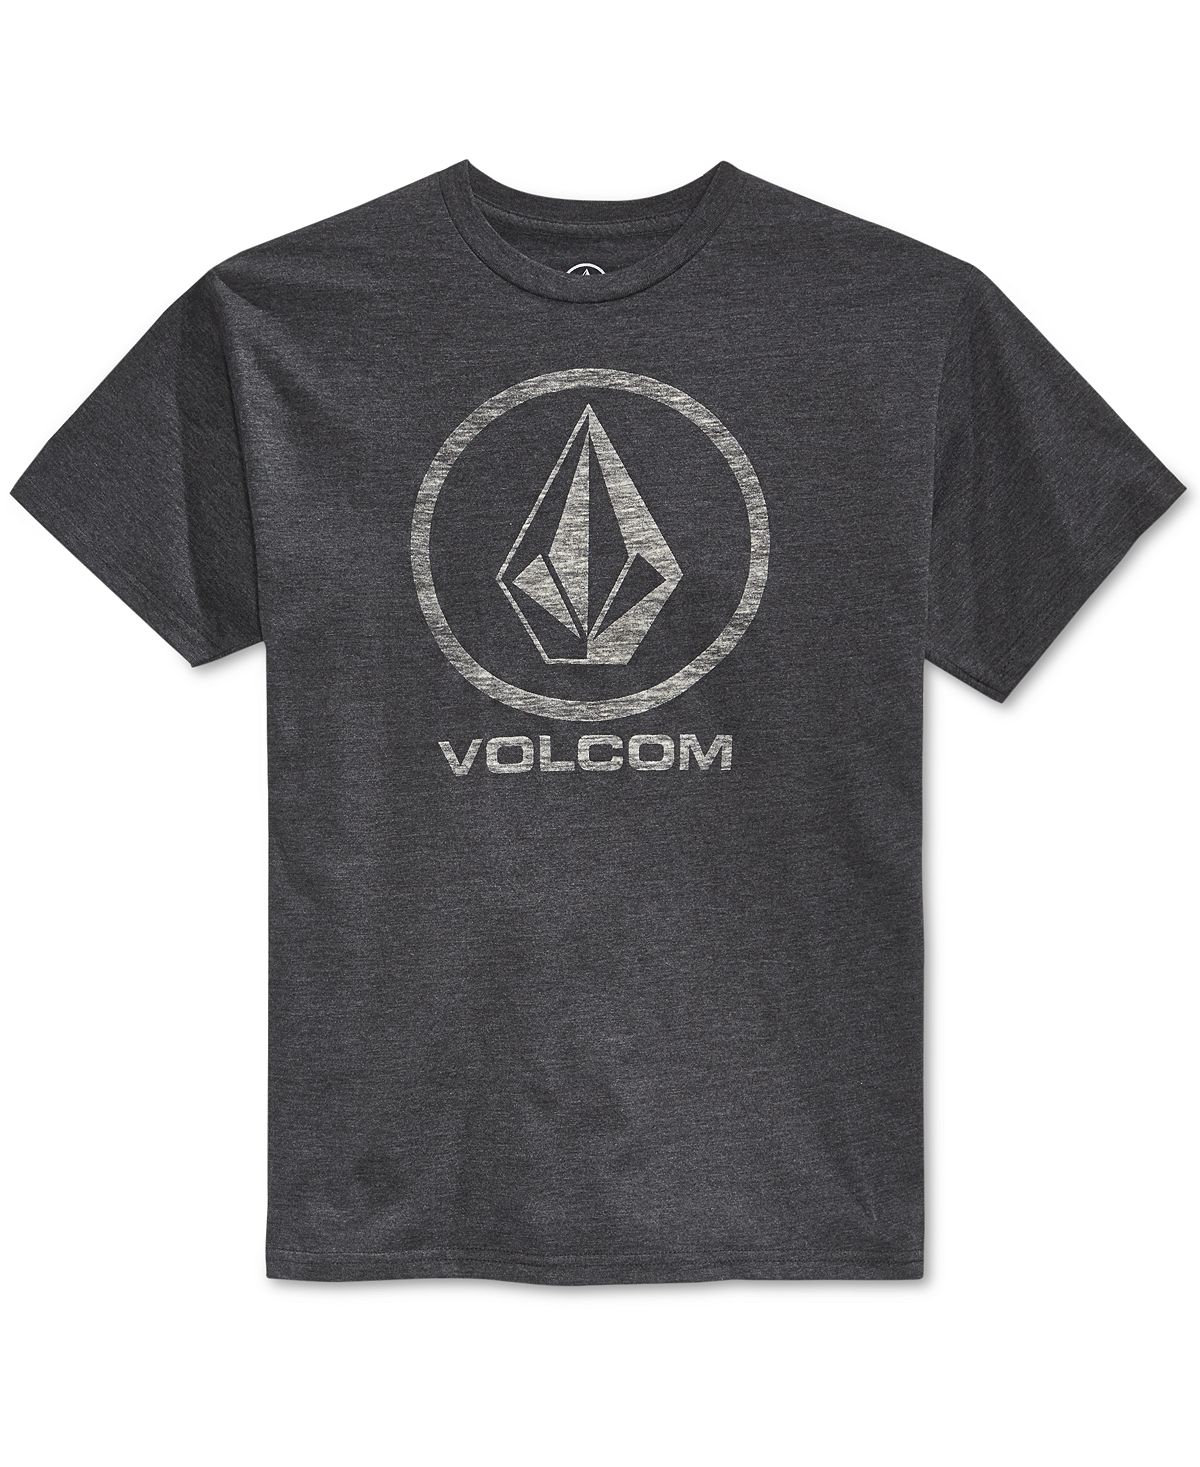 

Мужская футболка с логотипом и графическим принтом corpo push Volcom, мульти, Серый